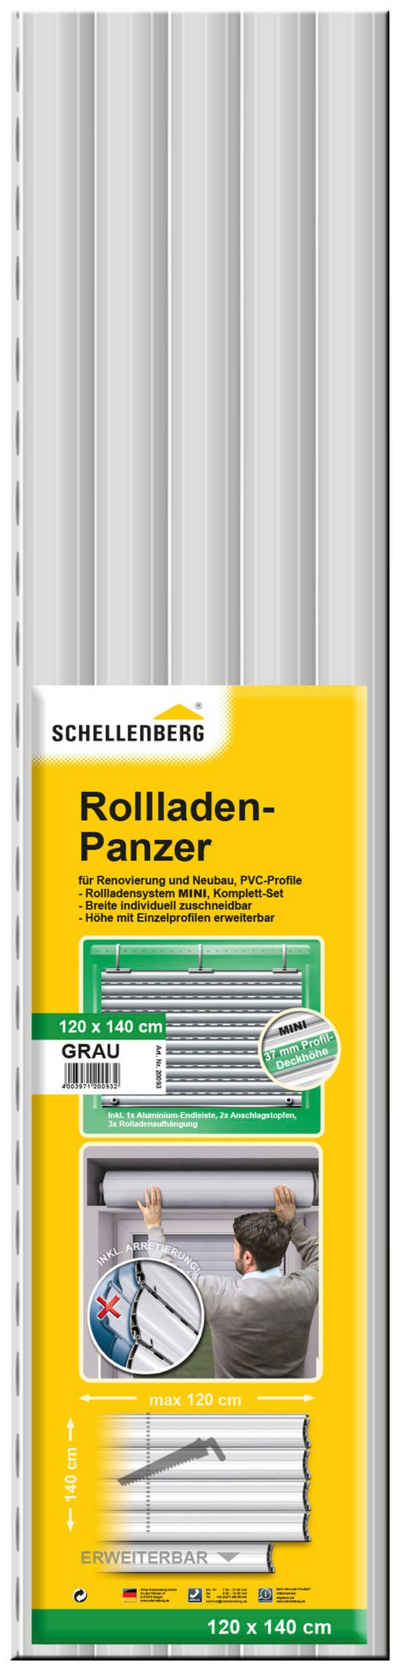 SCHELLENBERG Rollladenpanzer, BxH: 120x140 cm